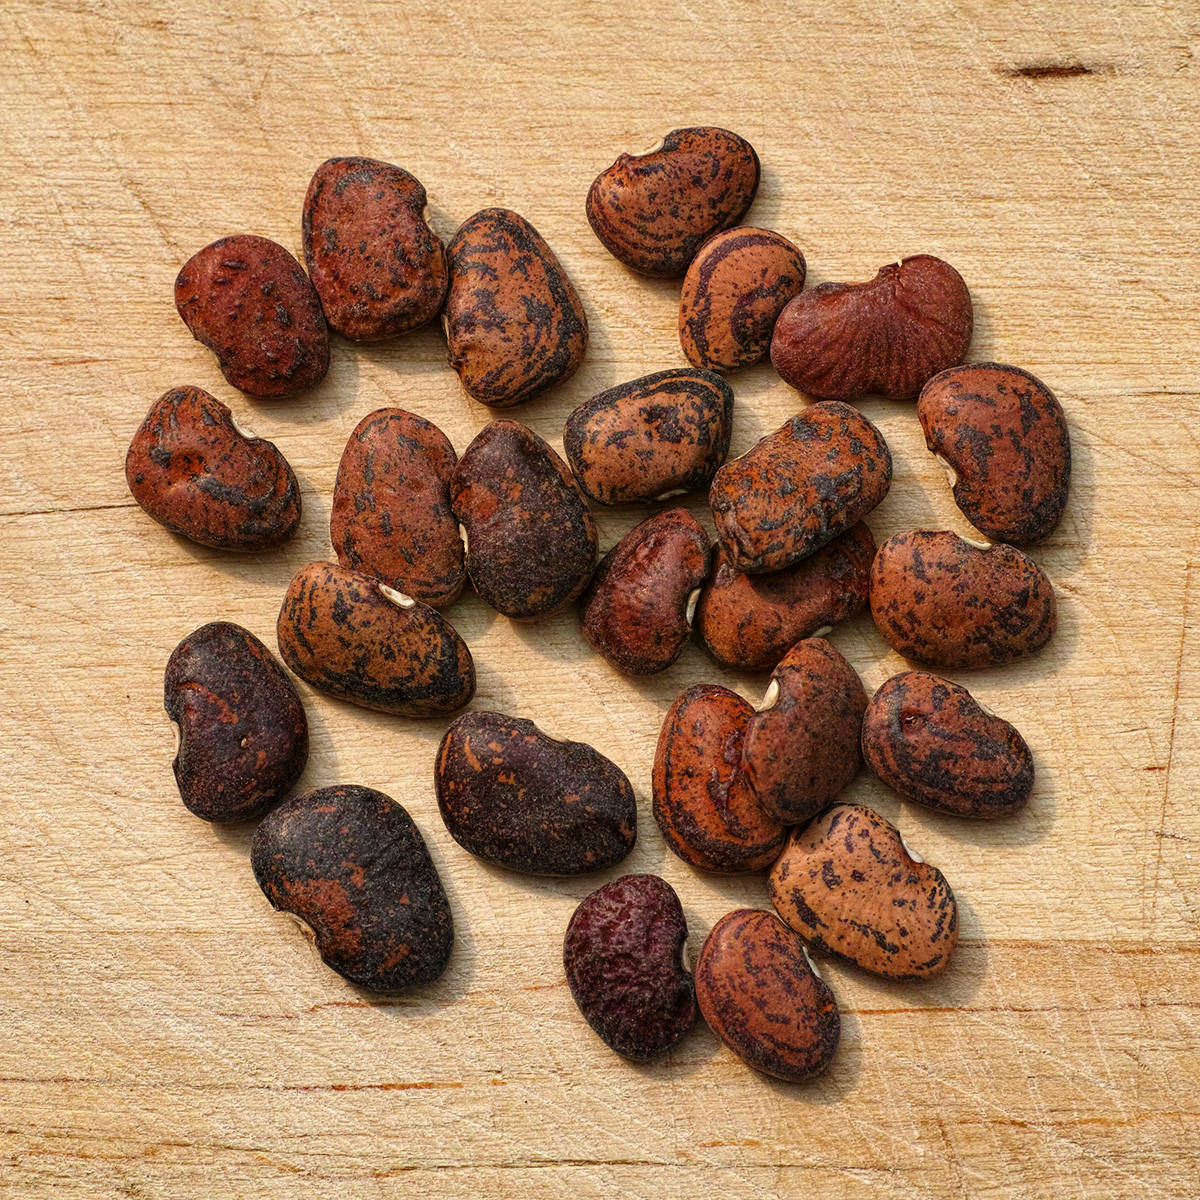 Jackson Wonder Butterbean Lima Bean Seeds